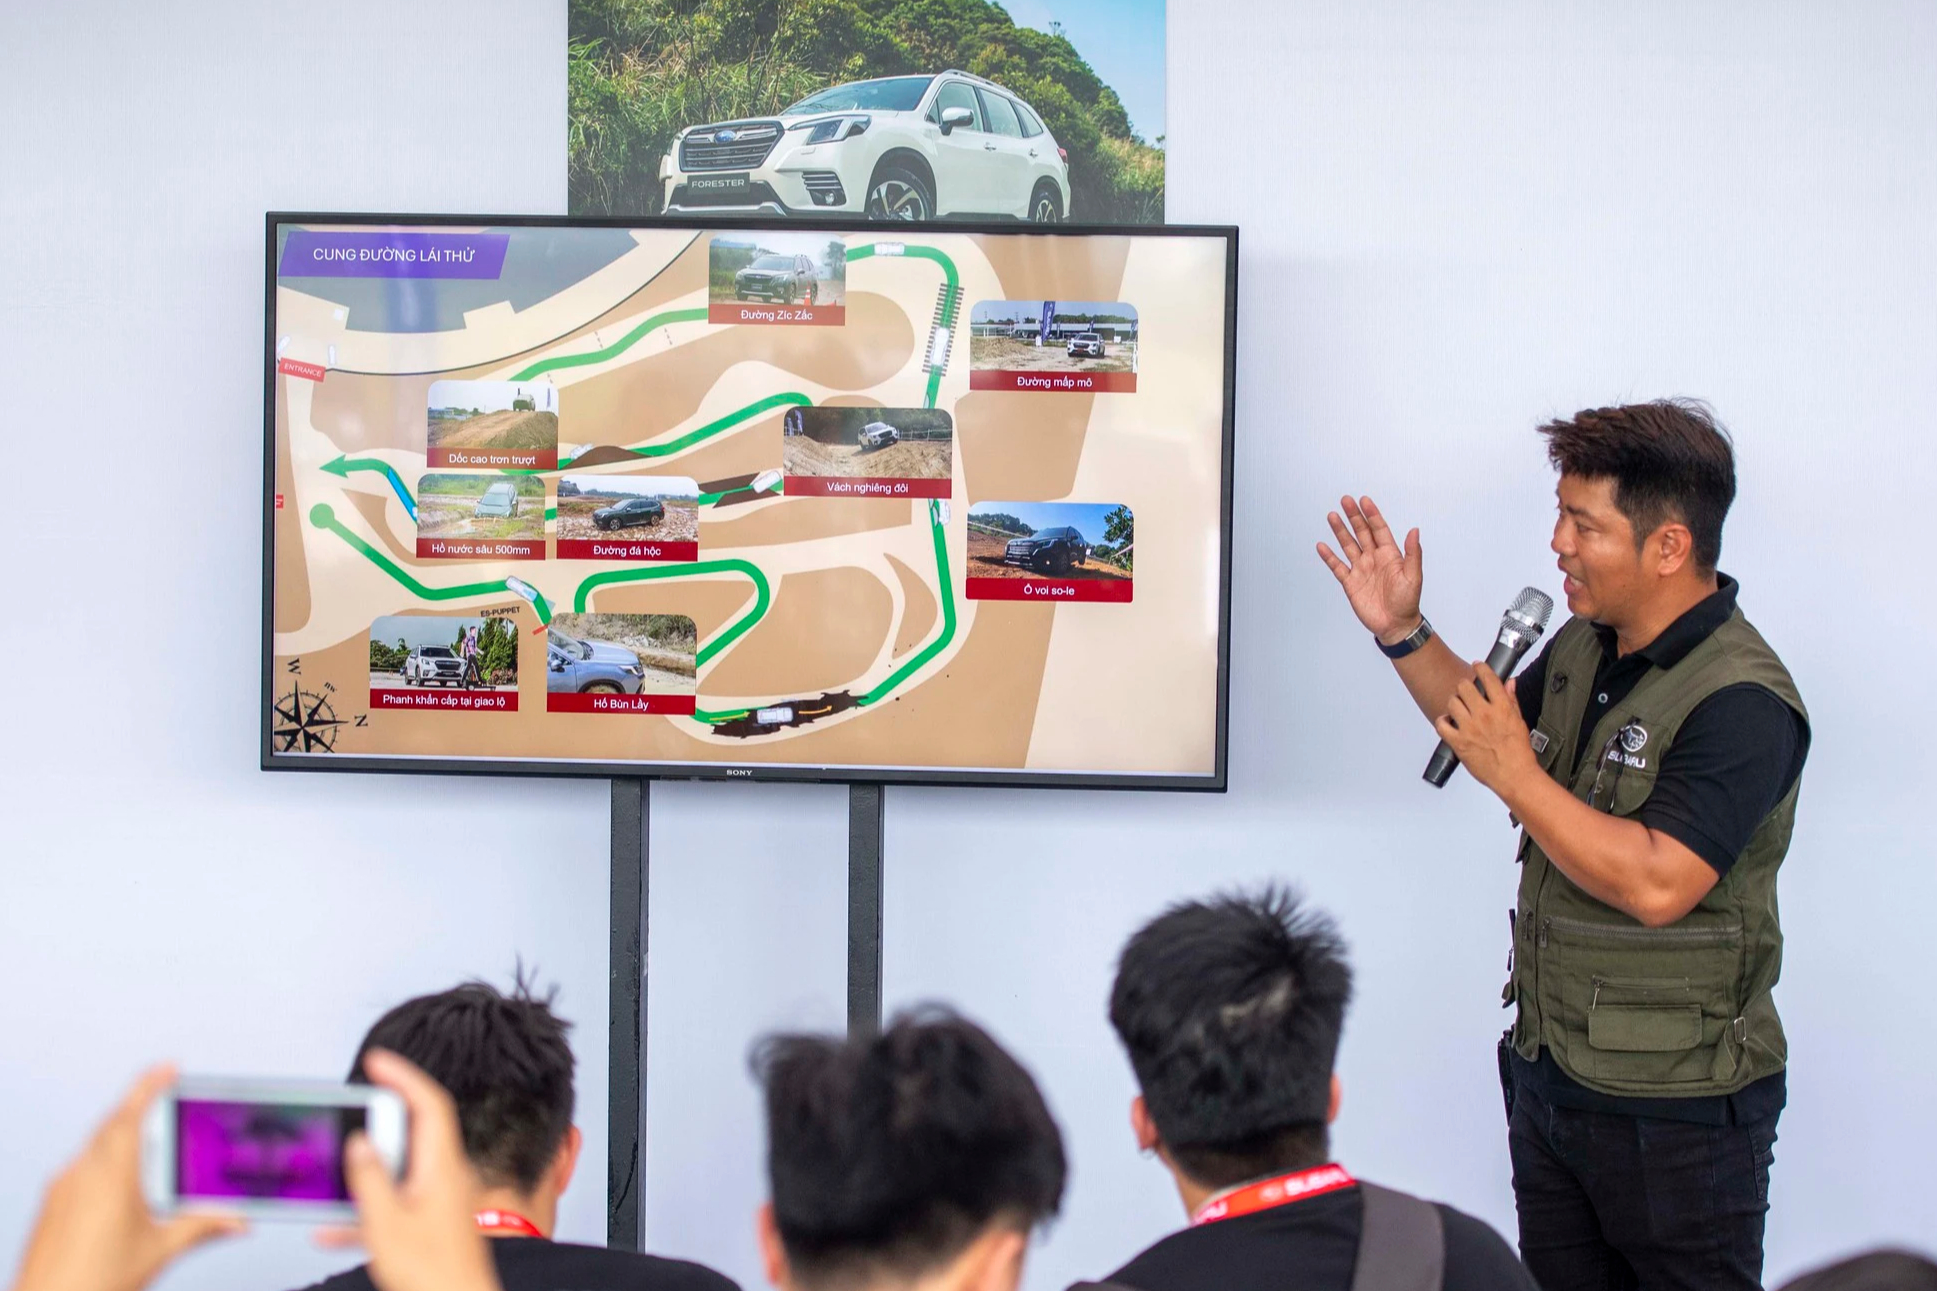 Ít kinh nghiệm lái gặp 5 tình huống off-road này dễ bỏ xe ở lại, lời khuyên dưới đây của tay đua Việt sẽ giúp vượt qua an toàn - Ảnh 2.